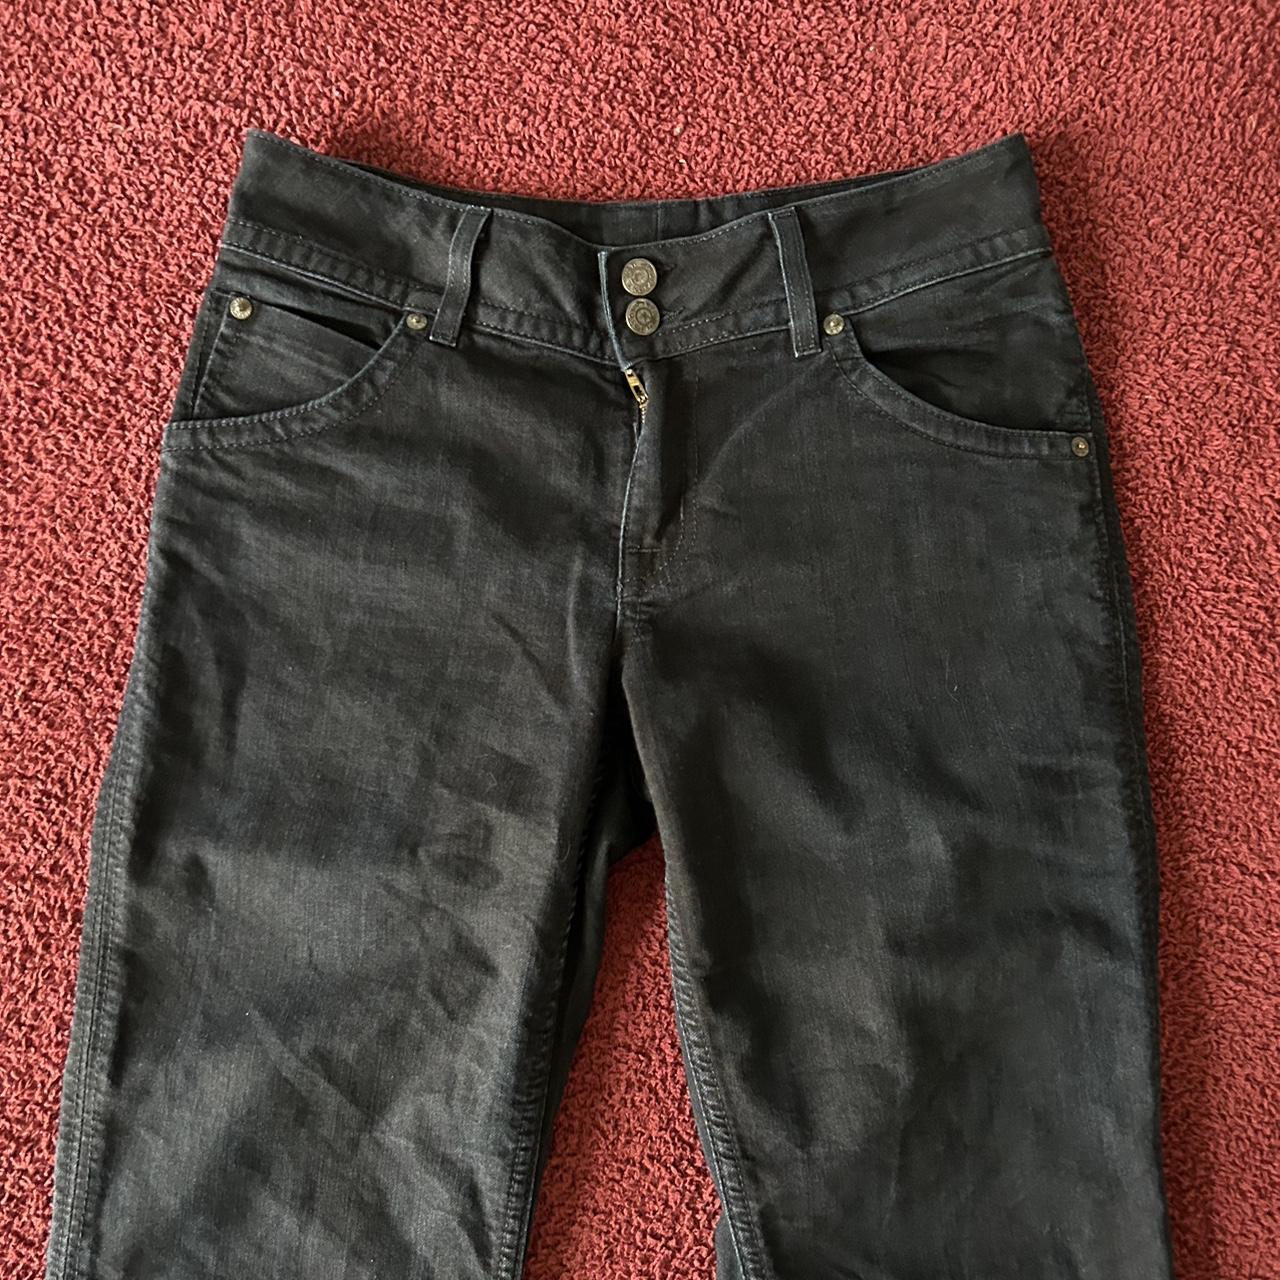 Vintage Hudson Jeans Navy Blue Bootcut Pants Hi! I... - Depop